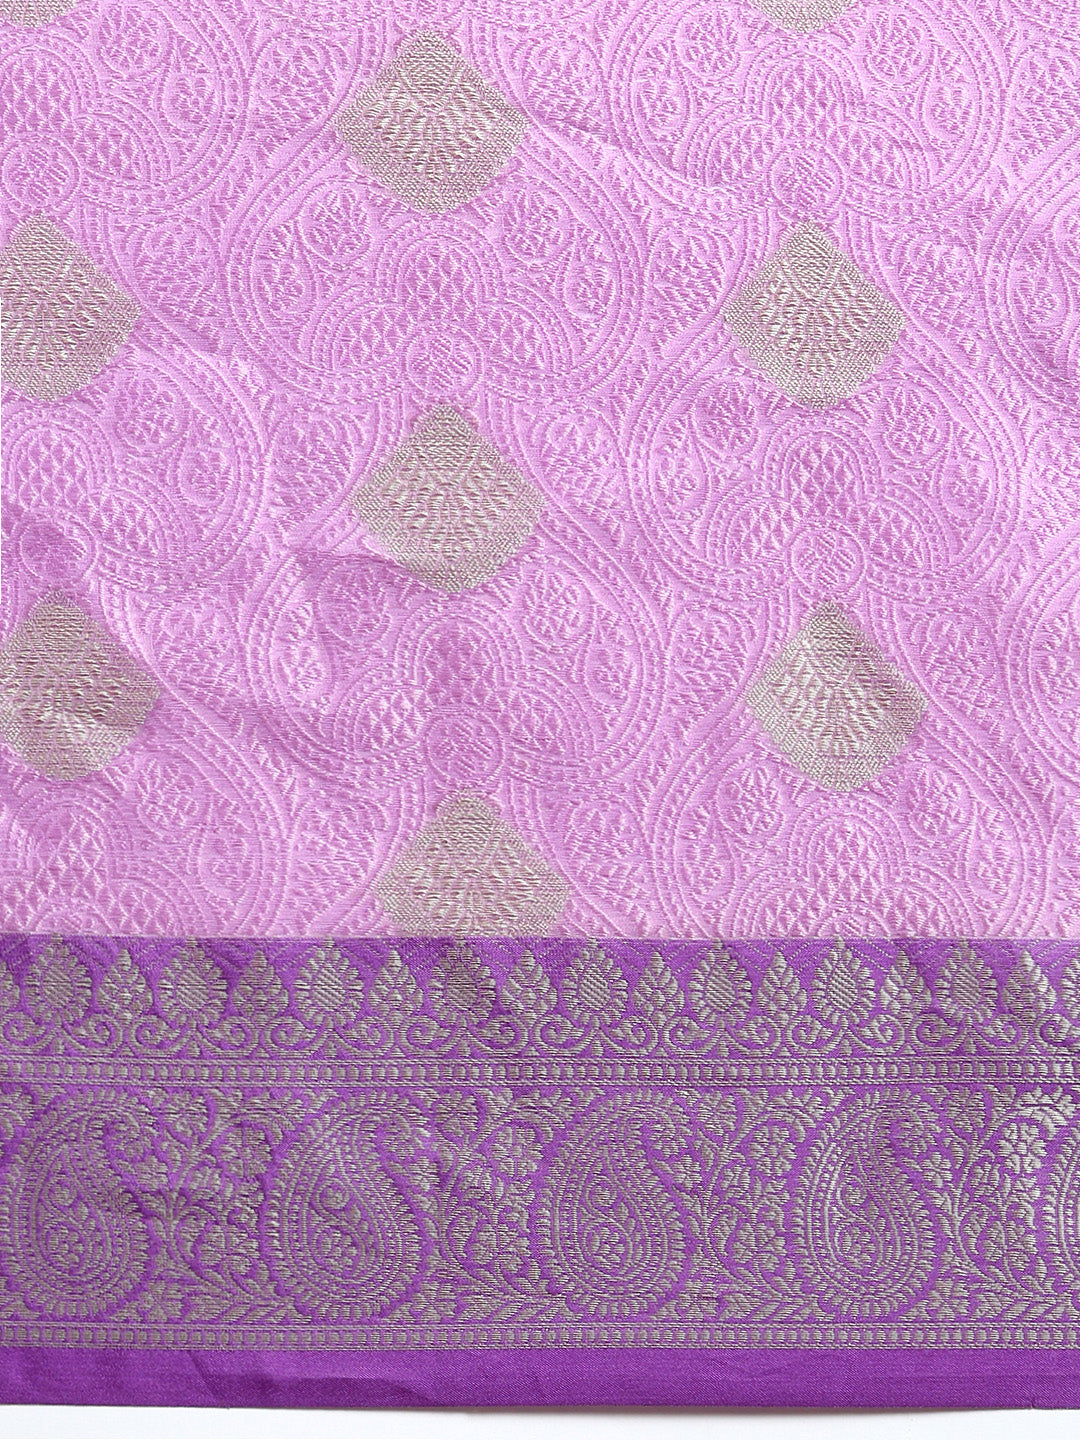 Semi Kora Cotton Allover Design Saree Lavender with Silver Zari Border SKCW07